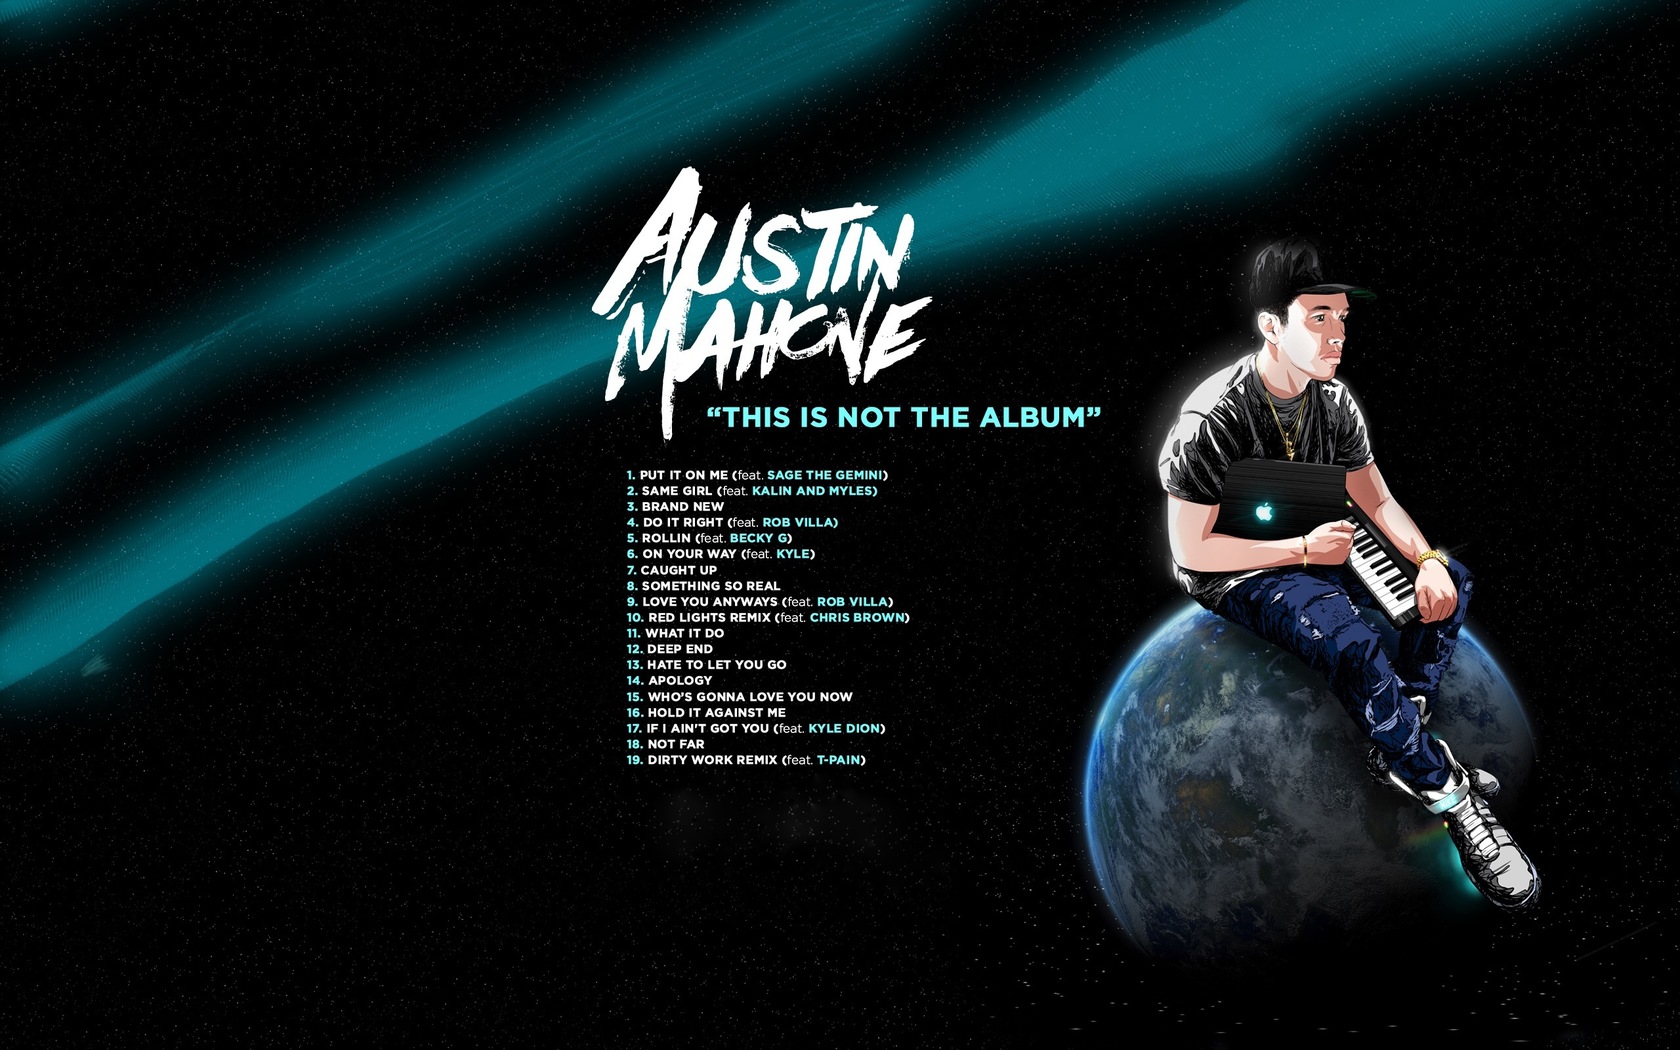 เบื่อเพลงใหม่ๆมาฟัง Mixtape จาก Austin Mahone กันดีกว่า !!